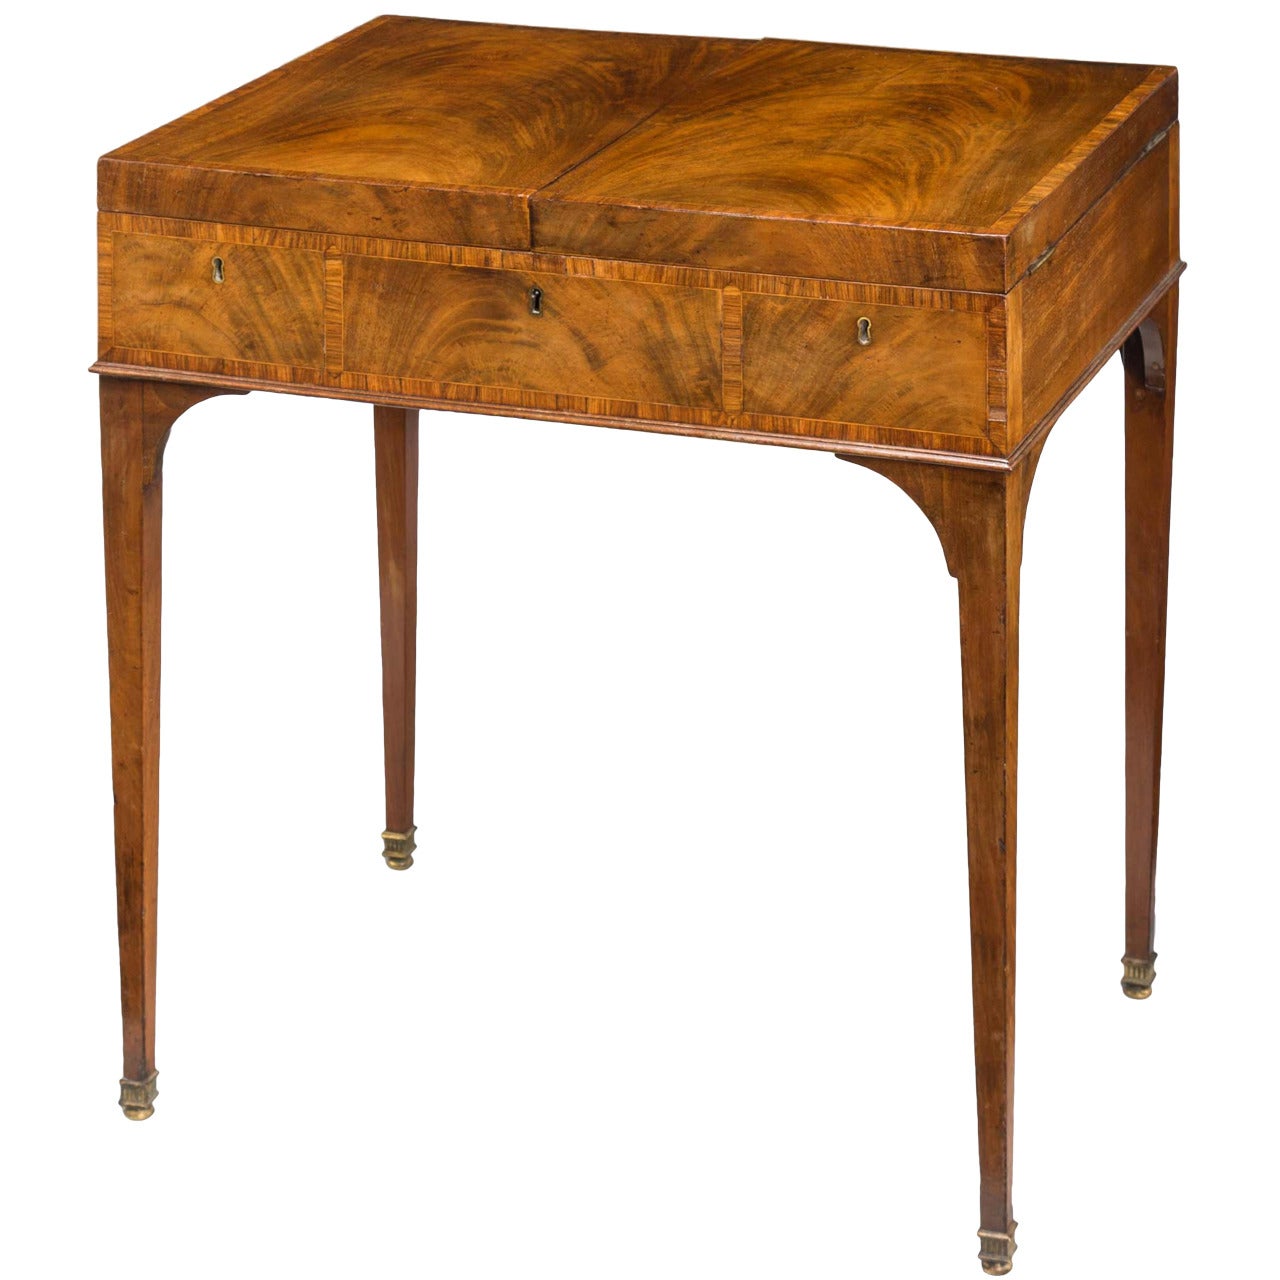 George III period Gentleman's Dressing Table